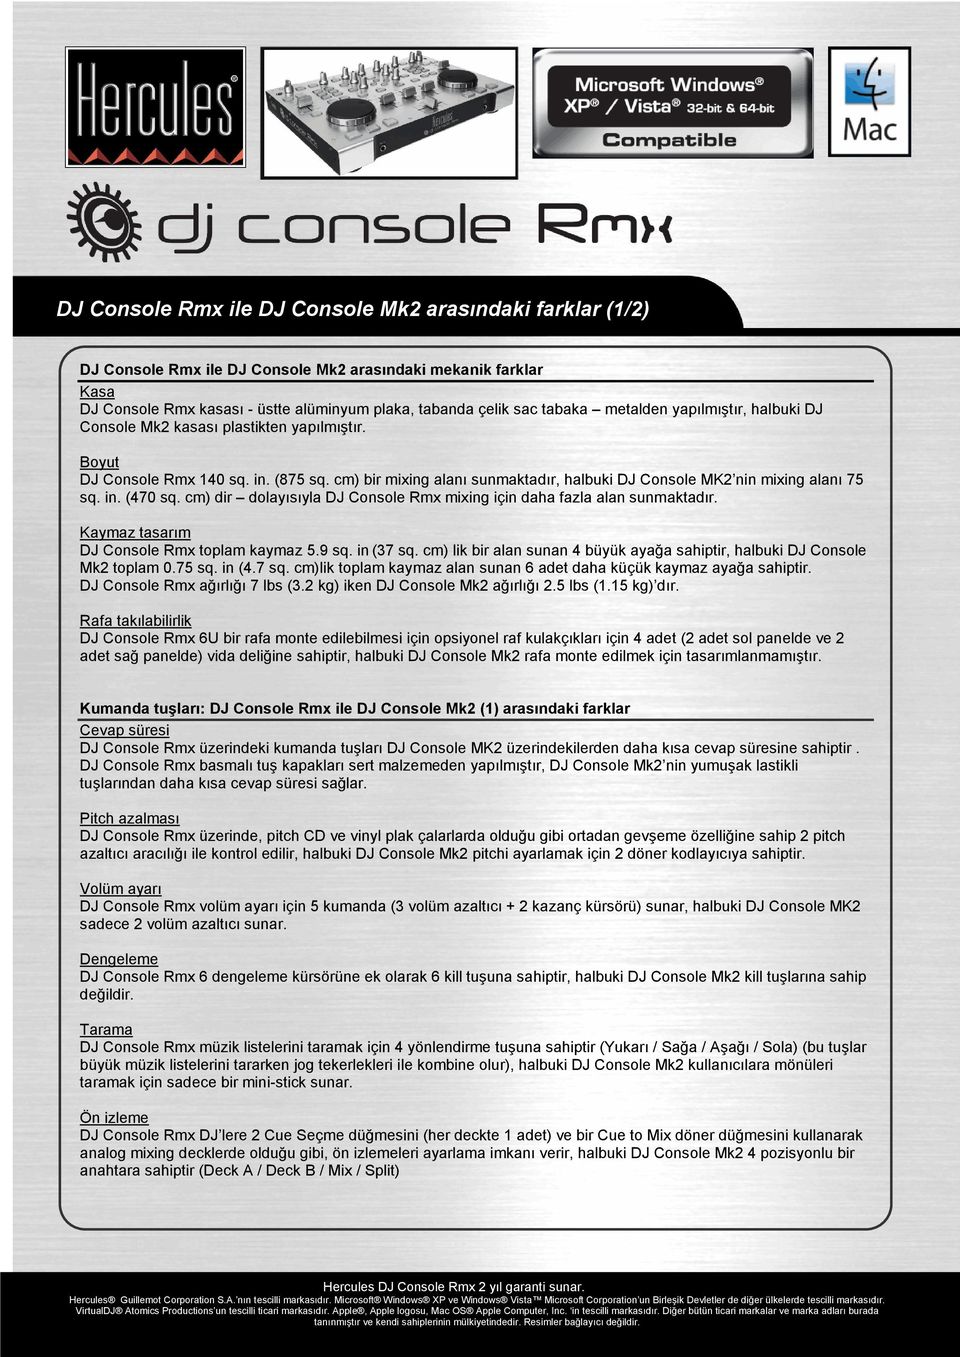 in. (470 sq. cm) dir dolayısıyla DJ Console Rmx mixing için daha fazla alan sunmaktadır. Kaymaz tasarım DJ Console Rmx toplam kaymaz 5.9 sq. in (37 sq.